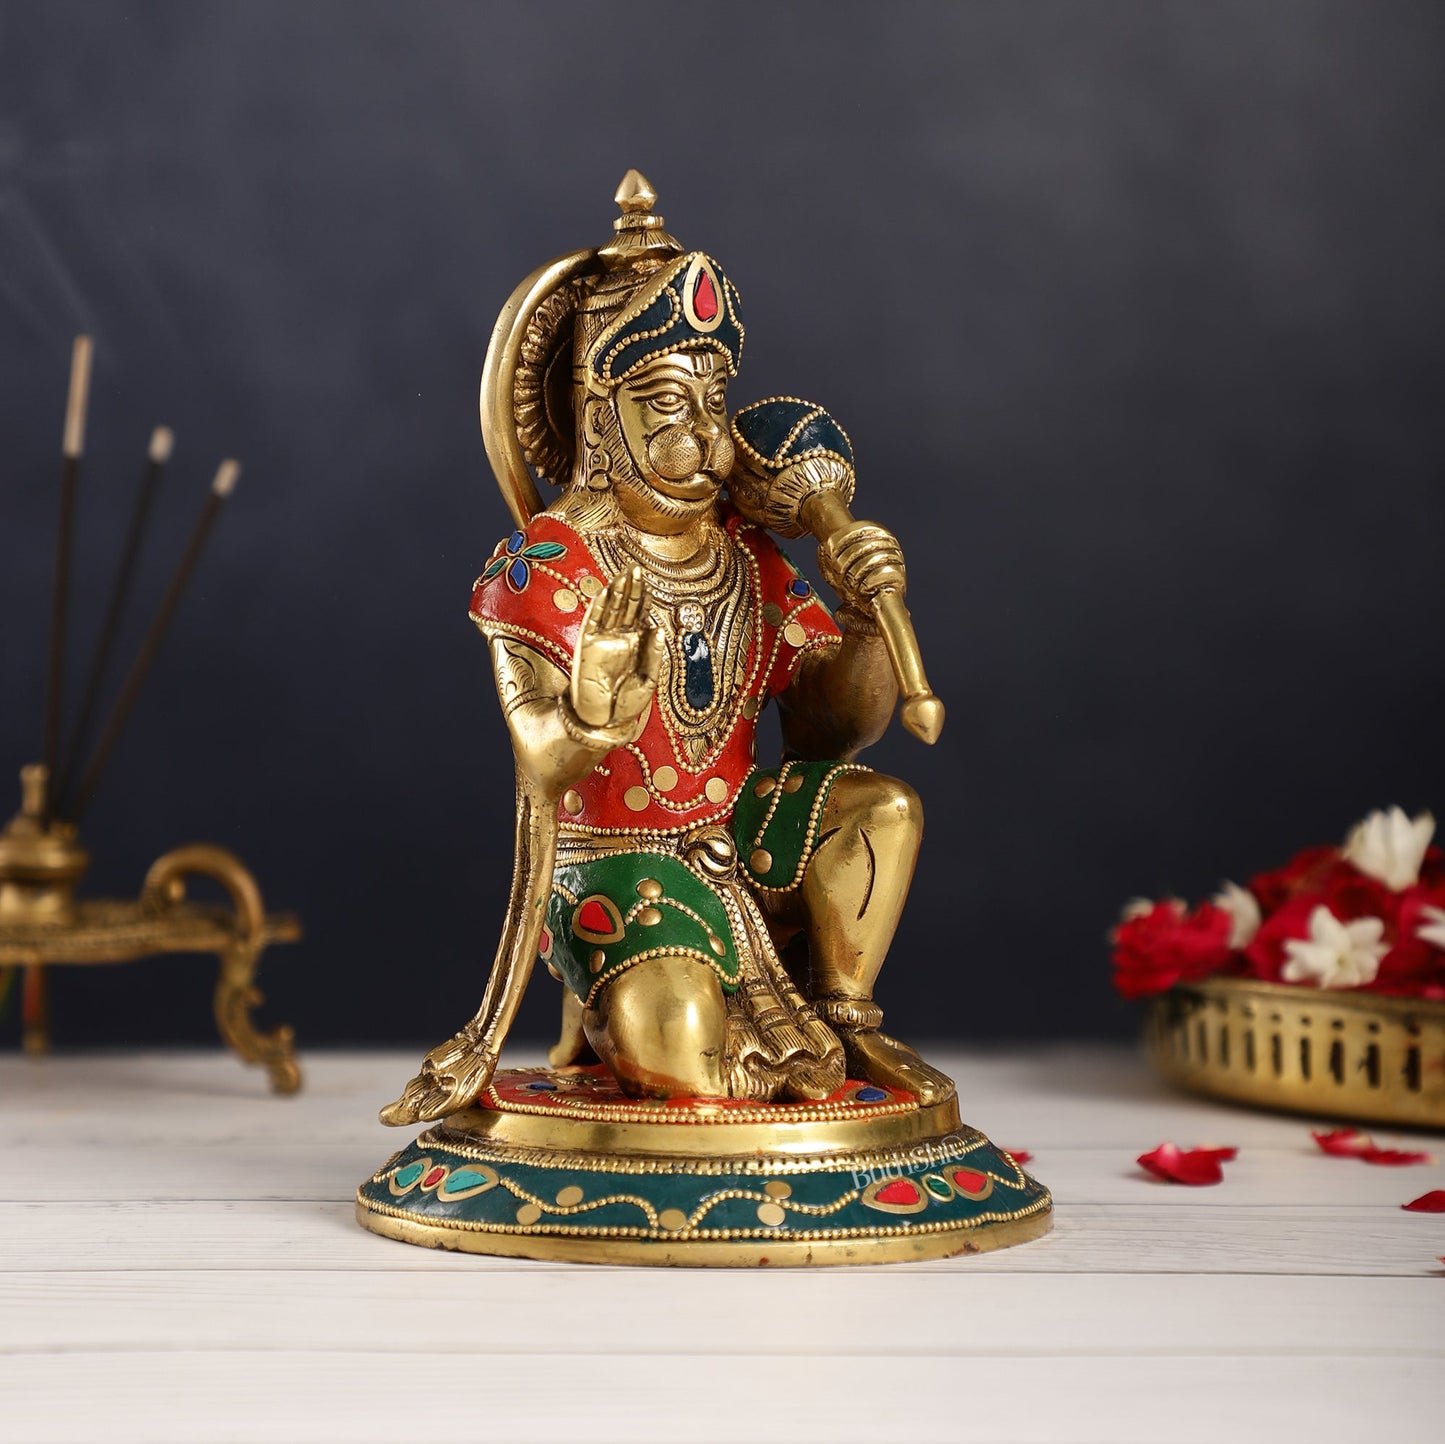 Divine 8.5-Inch Brass Gadadhari Hanuman Idol - Blessing Pose Aashirwad Mudra - Budhshiv.com